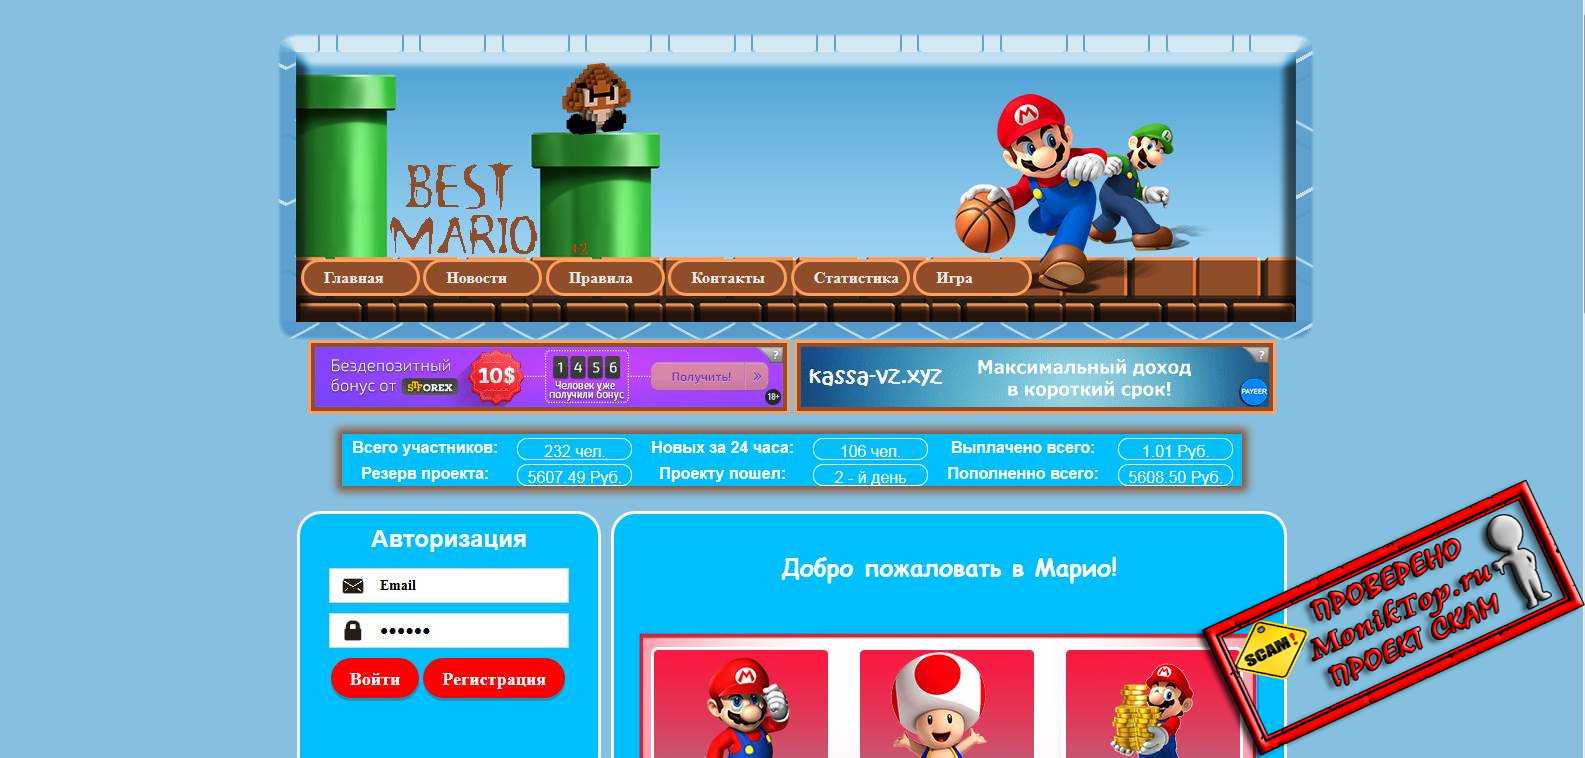 Best Mario